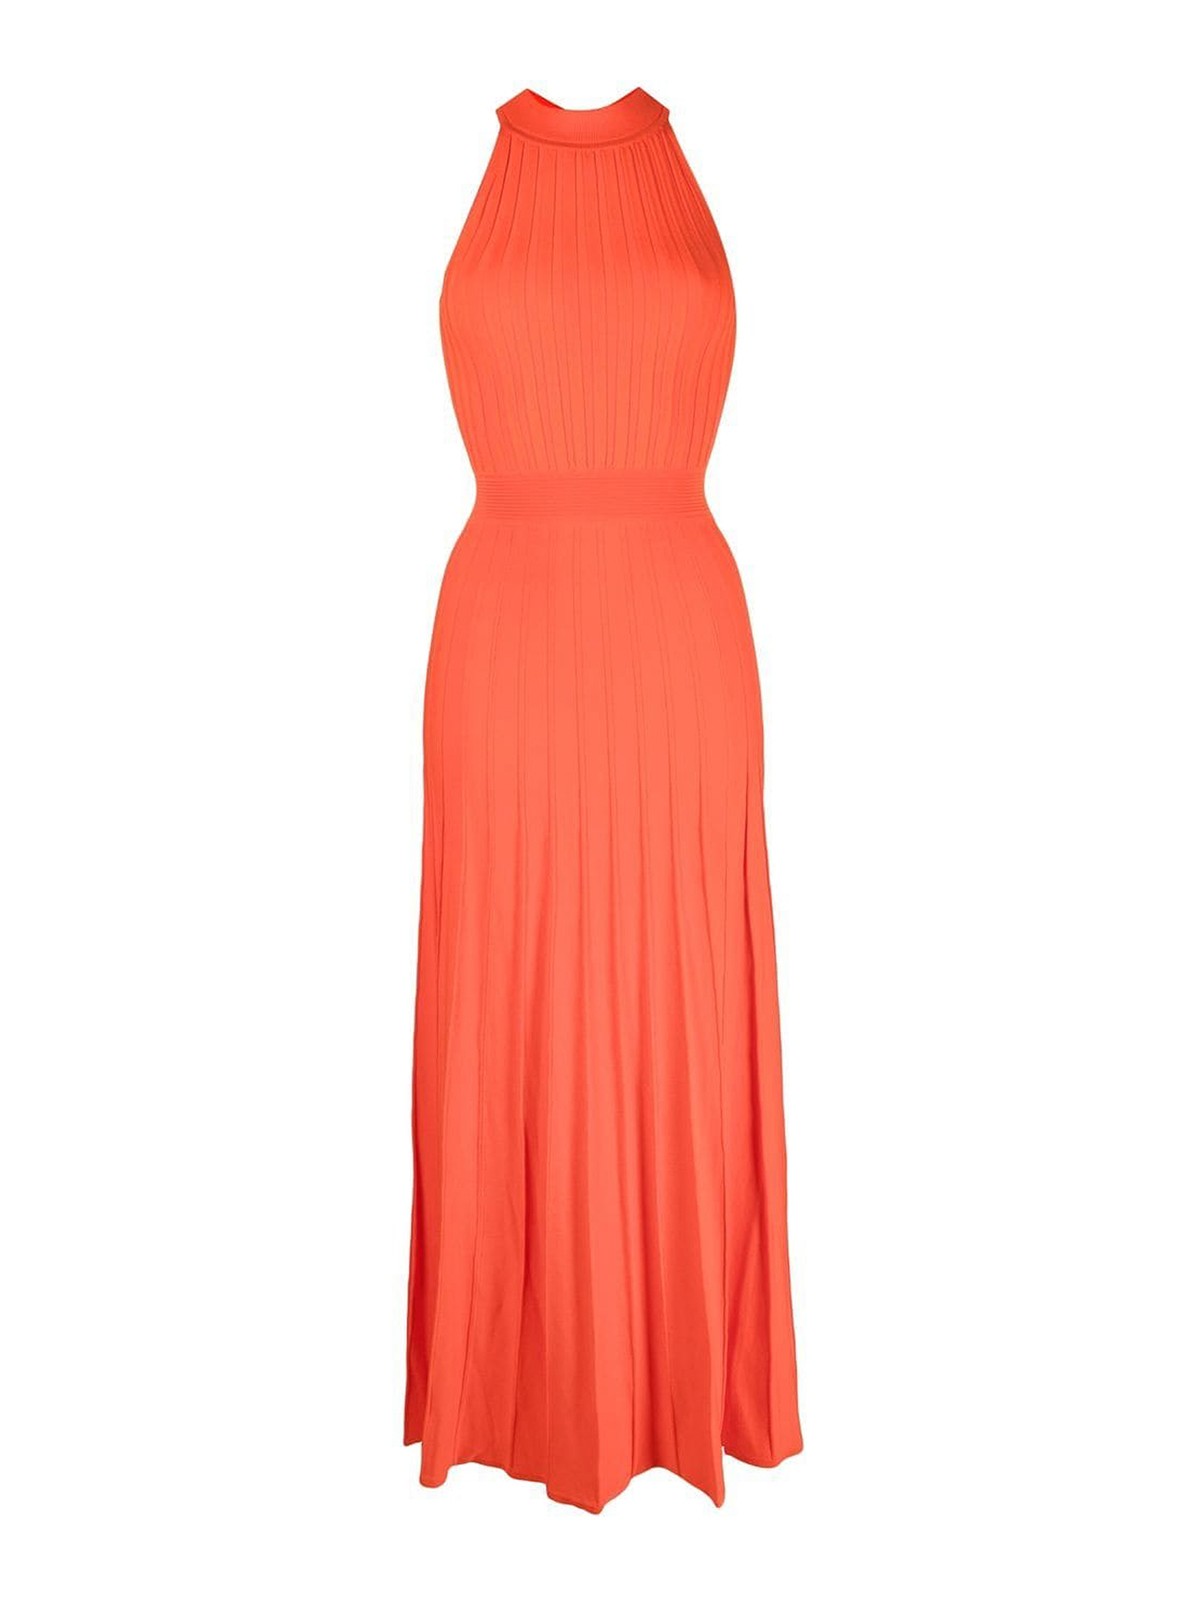 Michael Kors Sleeveless Knitted Long Dress In Orange